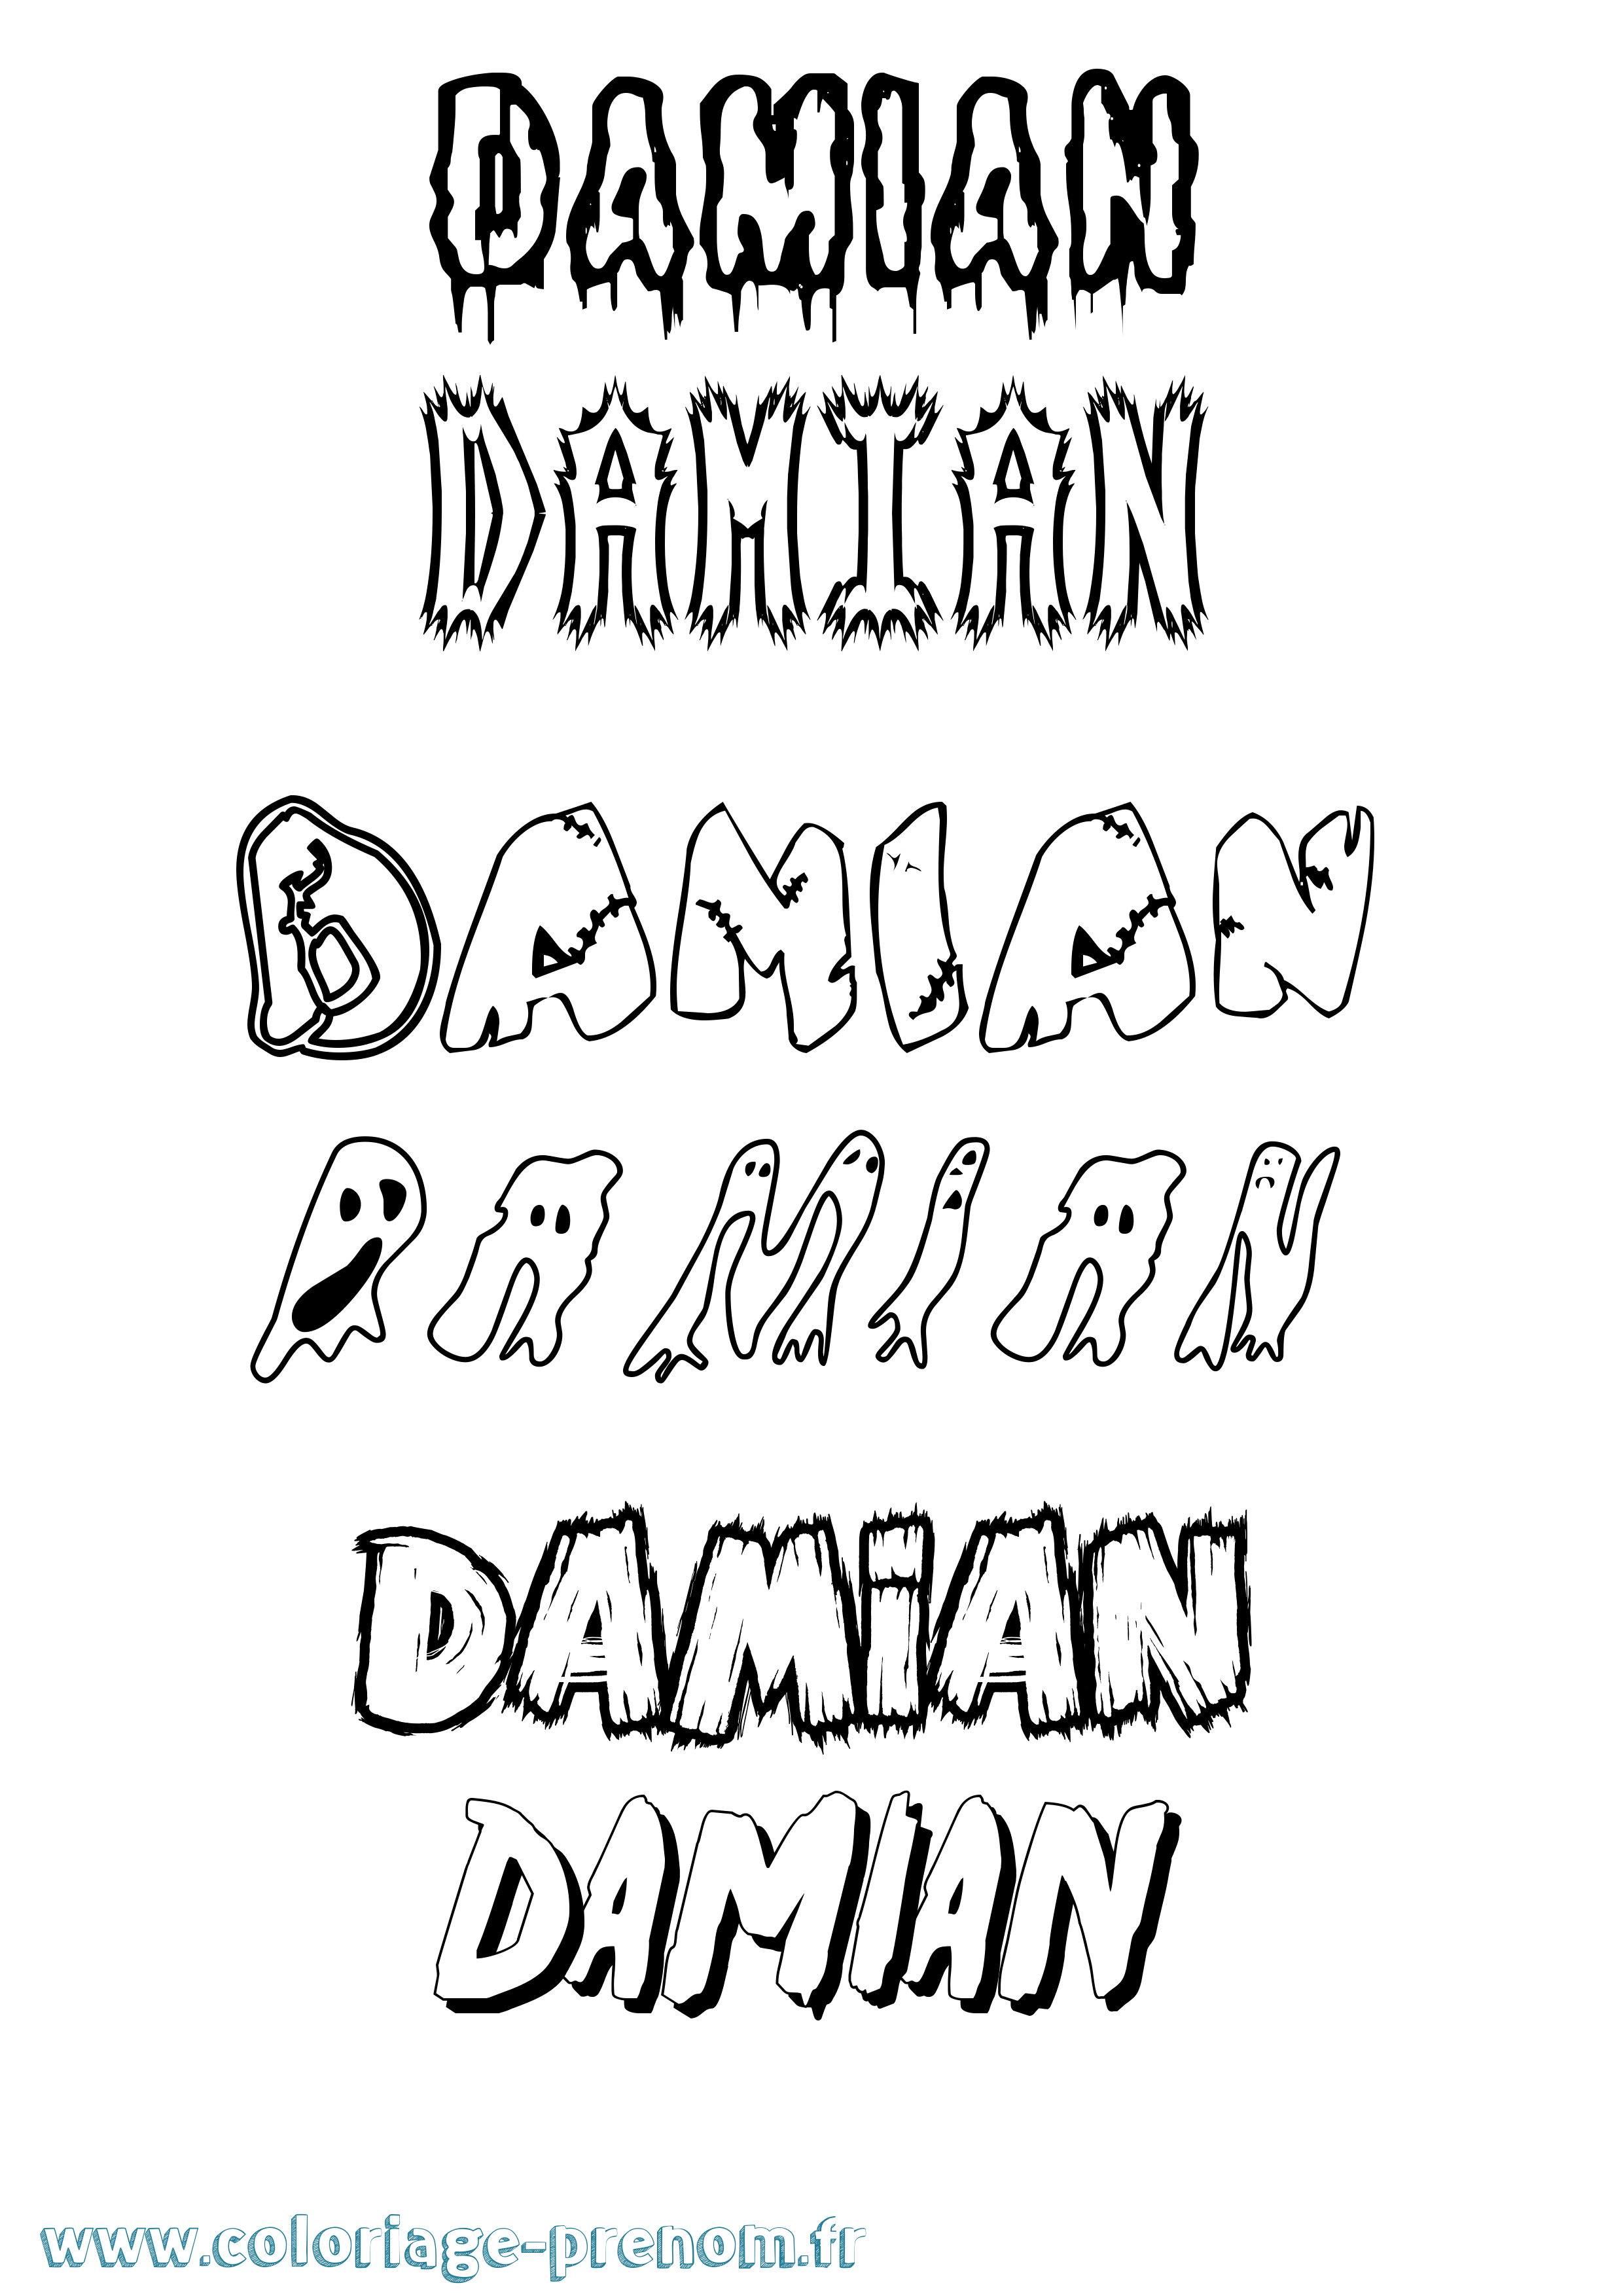 Coloriage prénom Damian Frisson